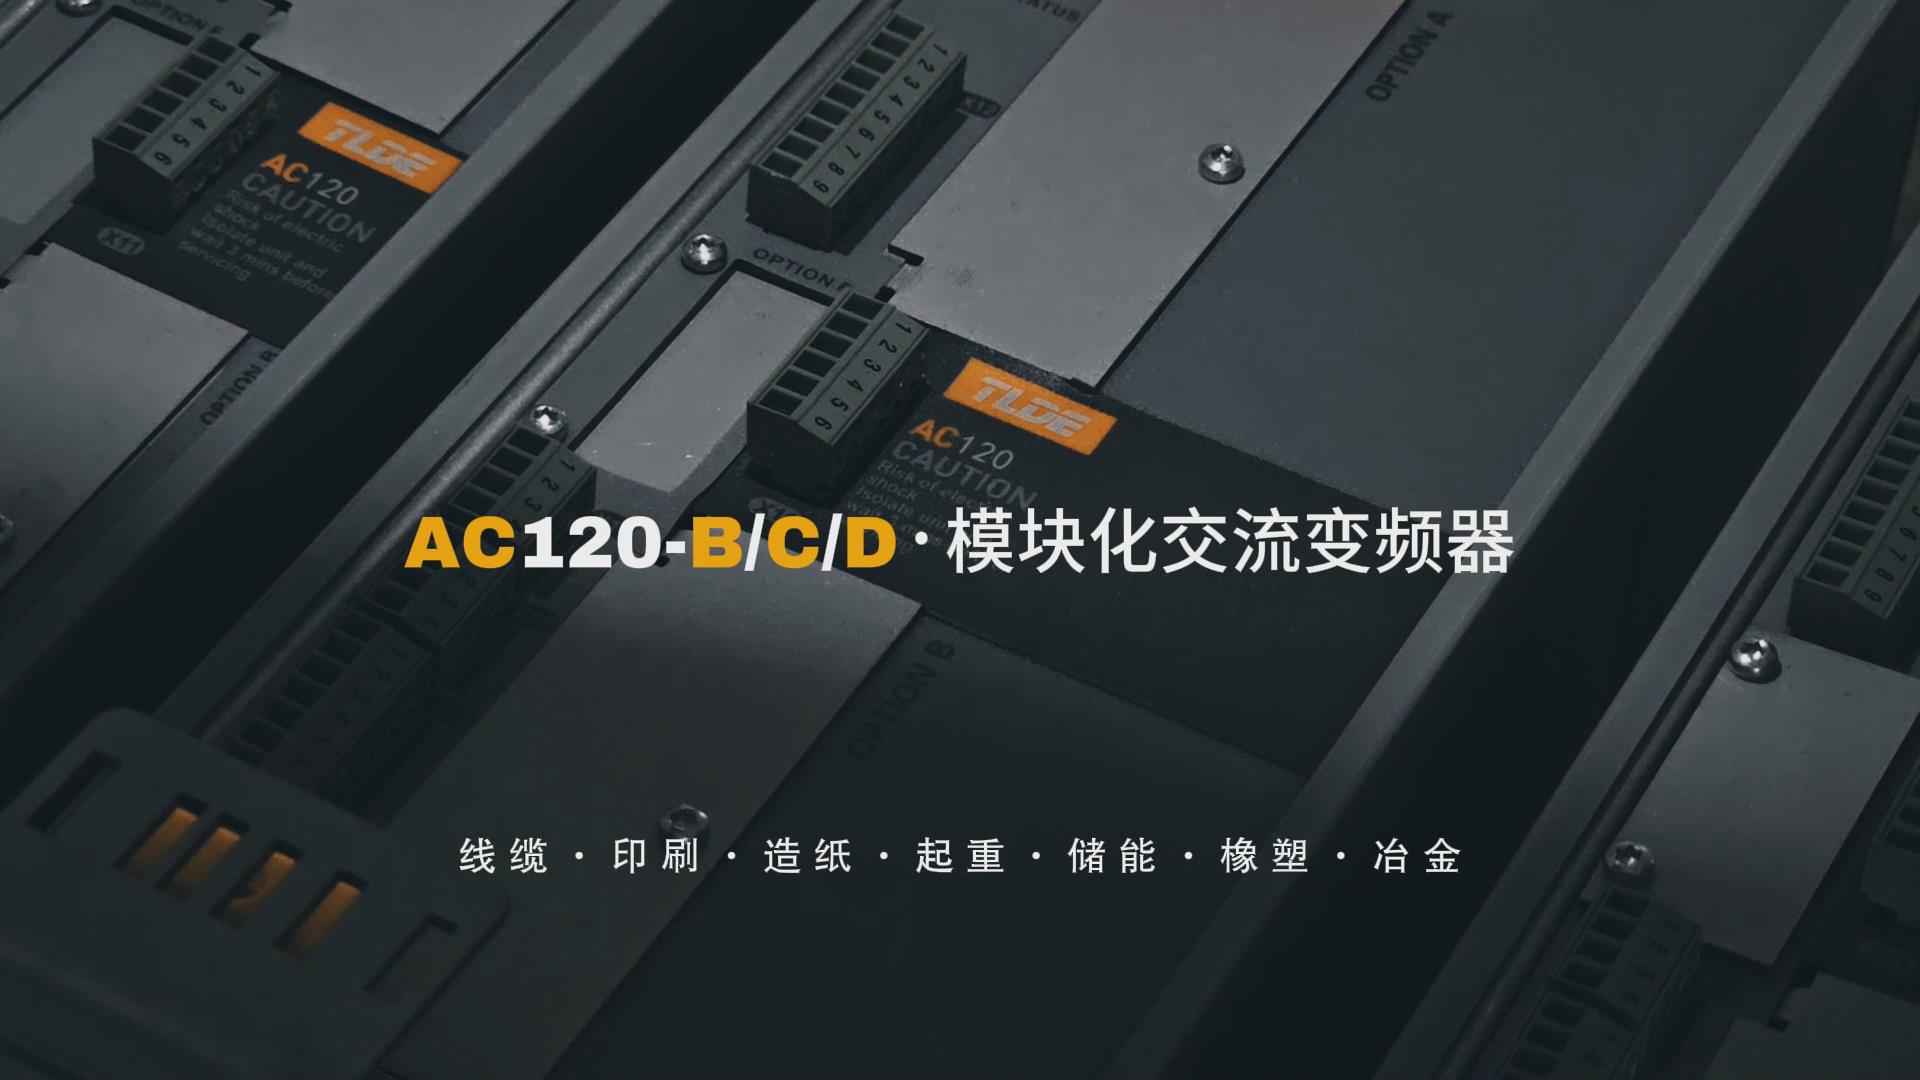 AC120-B/C/D模块化交流变频器推荐！泰莱德自动化！